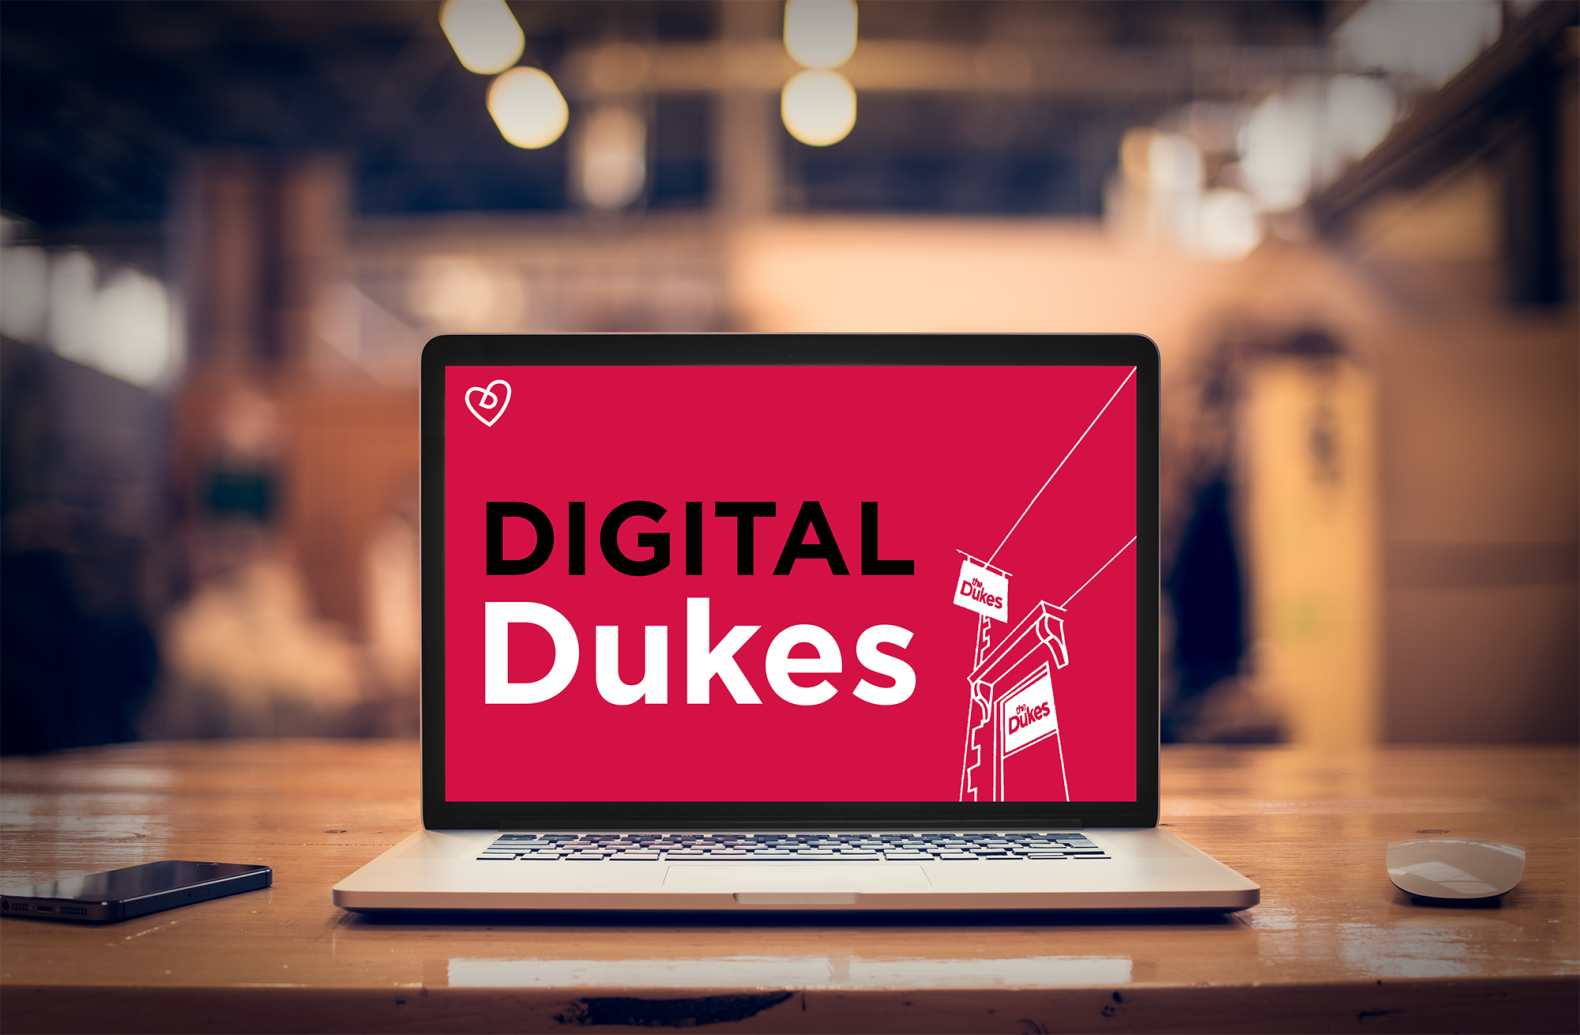 The Dukes Goes Digital